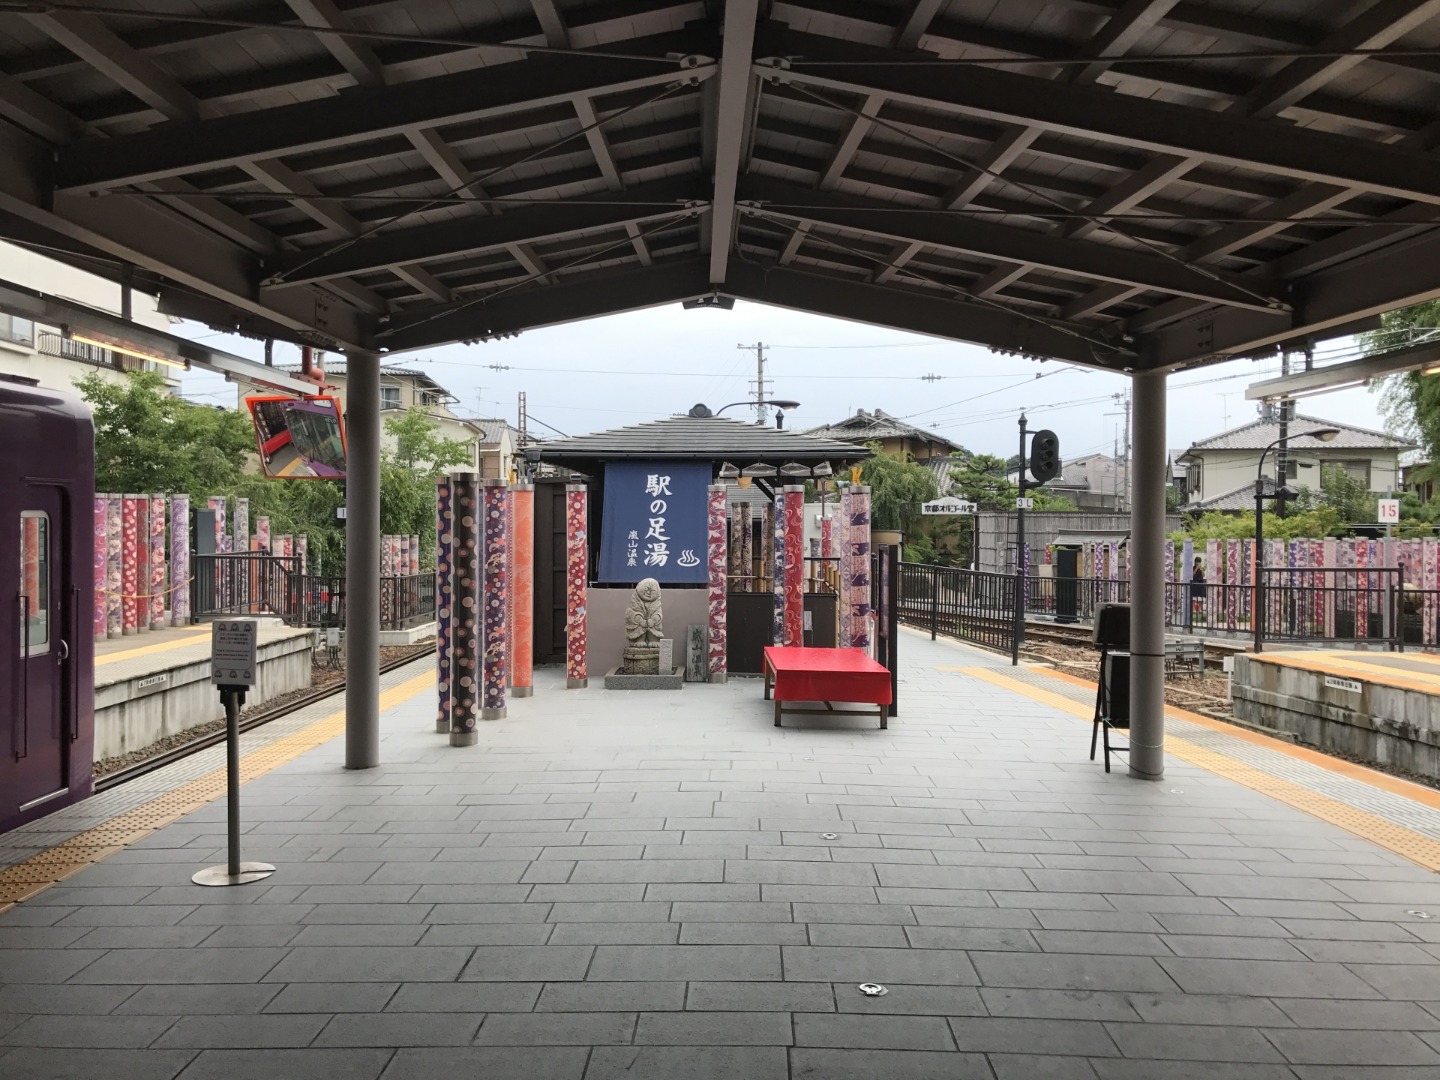 ออนเซ็นเท้า สถานีอาราชิยามะ (嵐山温泉 駅の足湯)